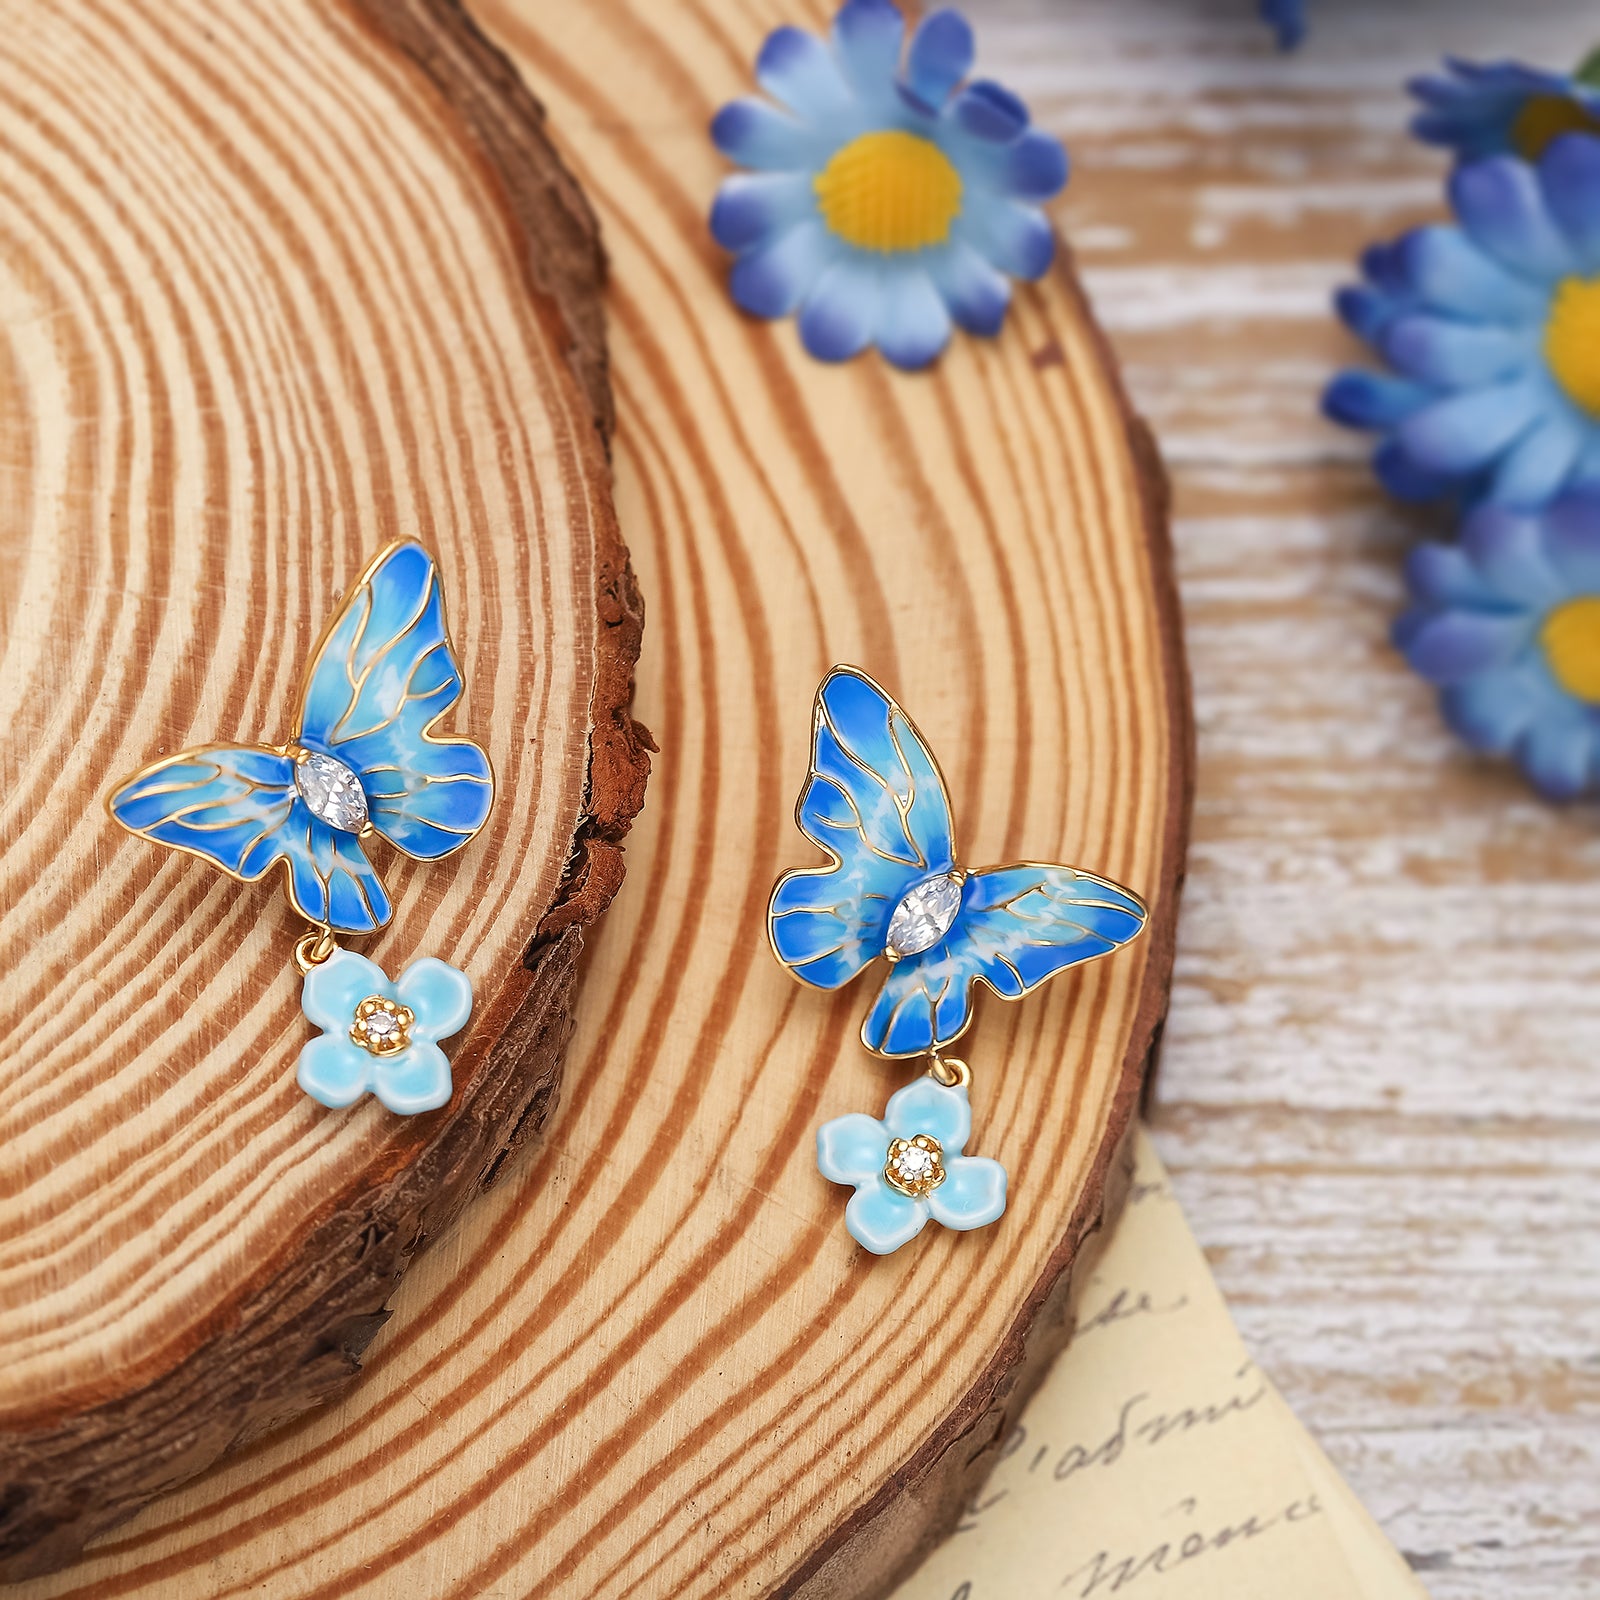 Blue Morpho Butterfly Enamel Earrings Gift for Friend